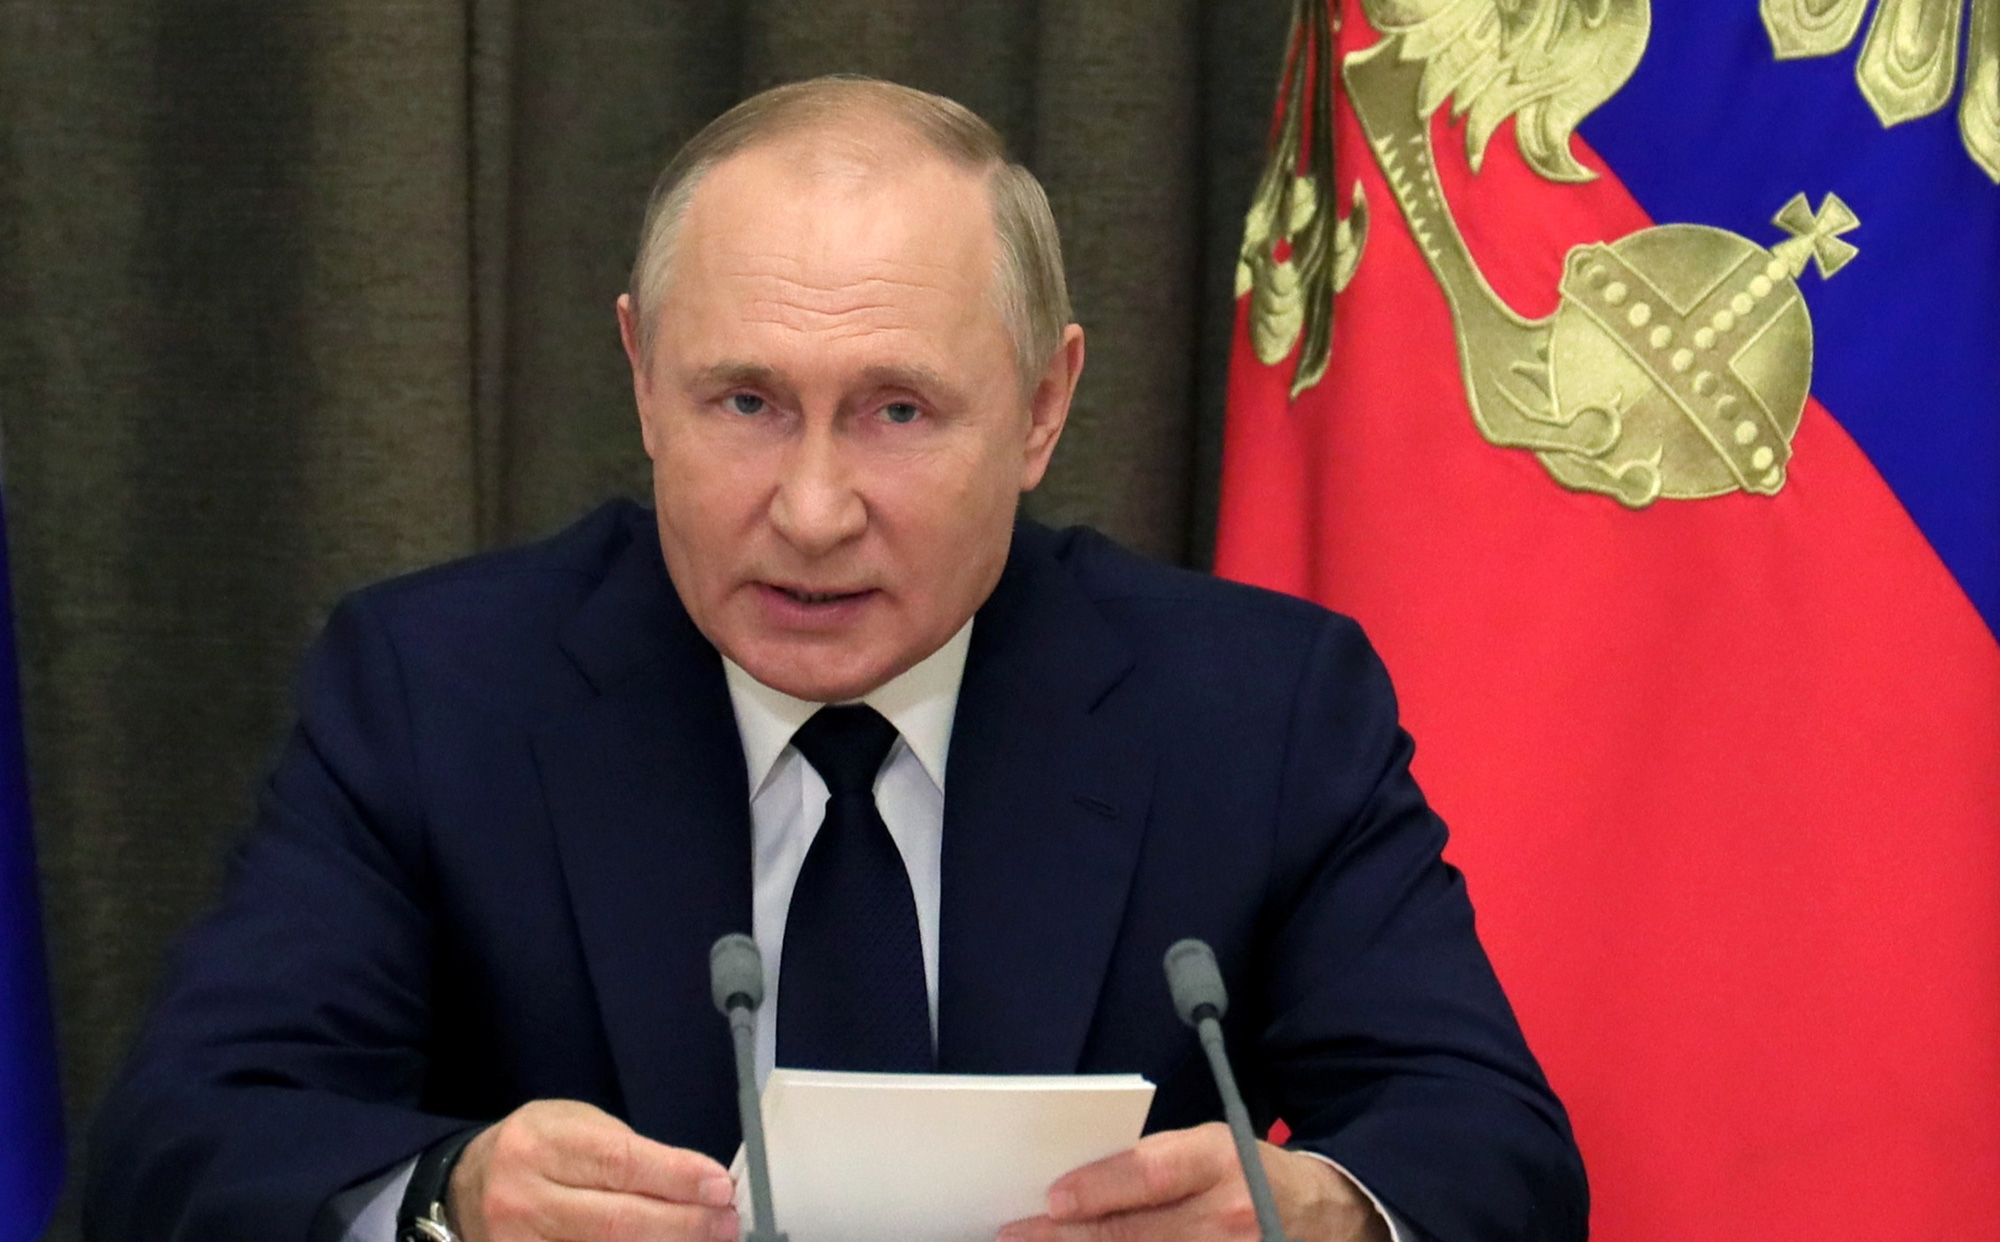 NÓNG: Ông Putin chủ trì phiên họp bất thường, các quan chức đồng loạt ủng hộ 1 quyết định quan trọng